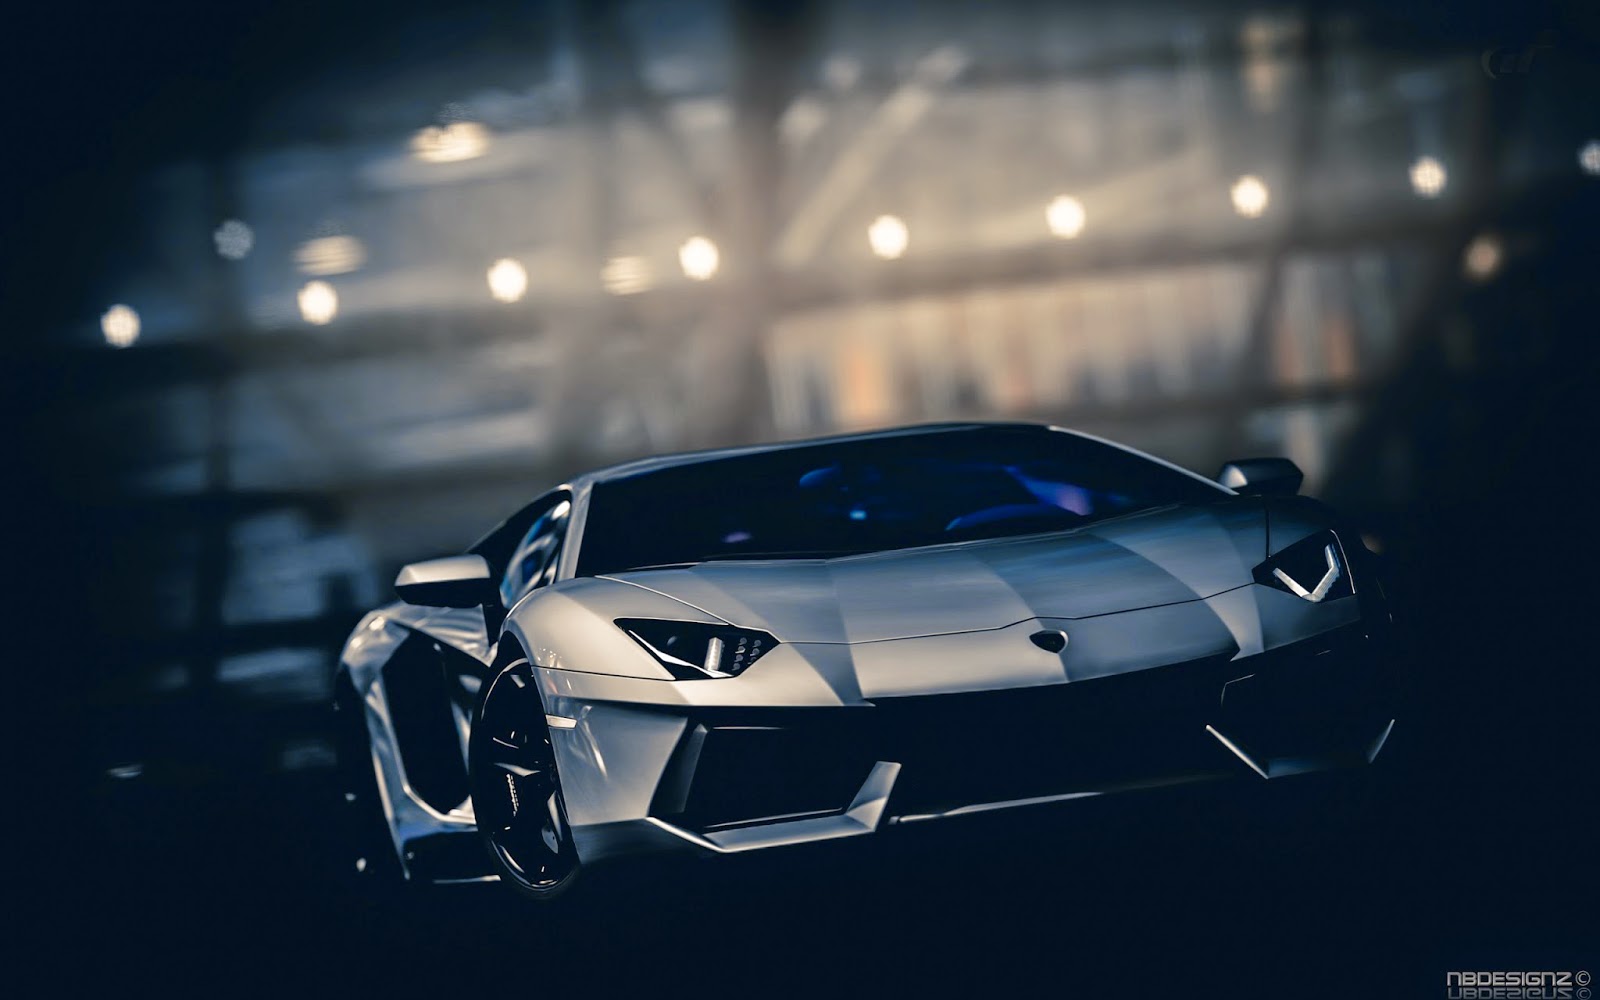 Hình nền xe Lamborghini cho điện thoại: Bạn đang tìm kiếm một hình nền độc đáo và phong cách cho điện thoại của mình? Hãy thử xem ngay các thiết kế hình nền xe Lamborghini đẹp mắt này. Chẳng only làm tăng phong cách cho điện thoại của bạn mà còn giúp bạn tỏa sáng giữa đám đông.